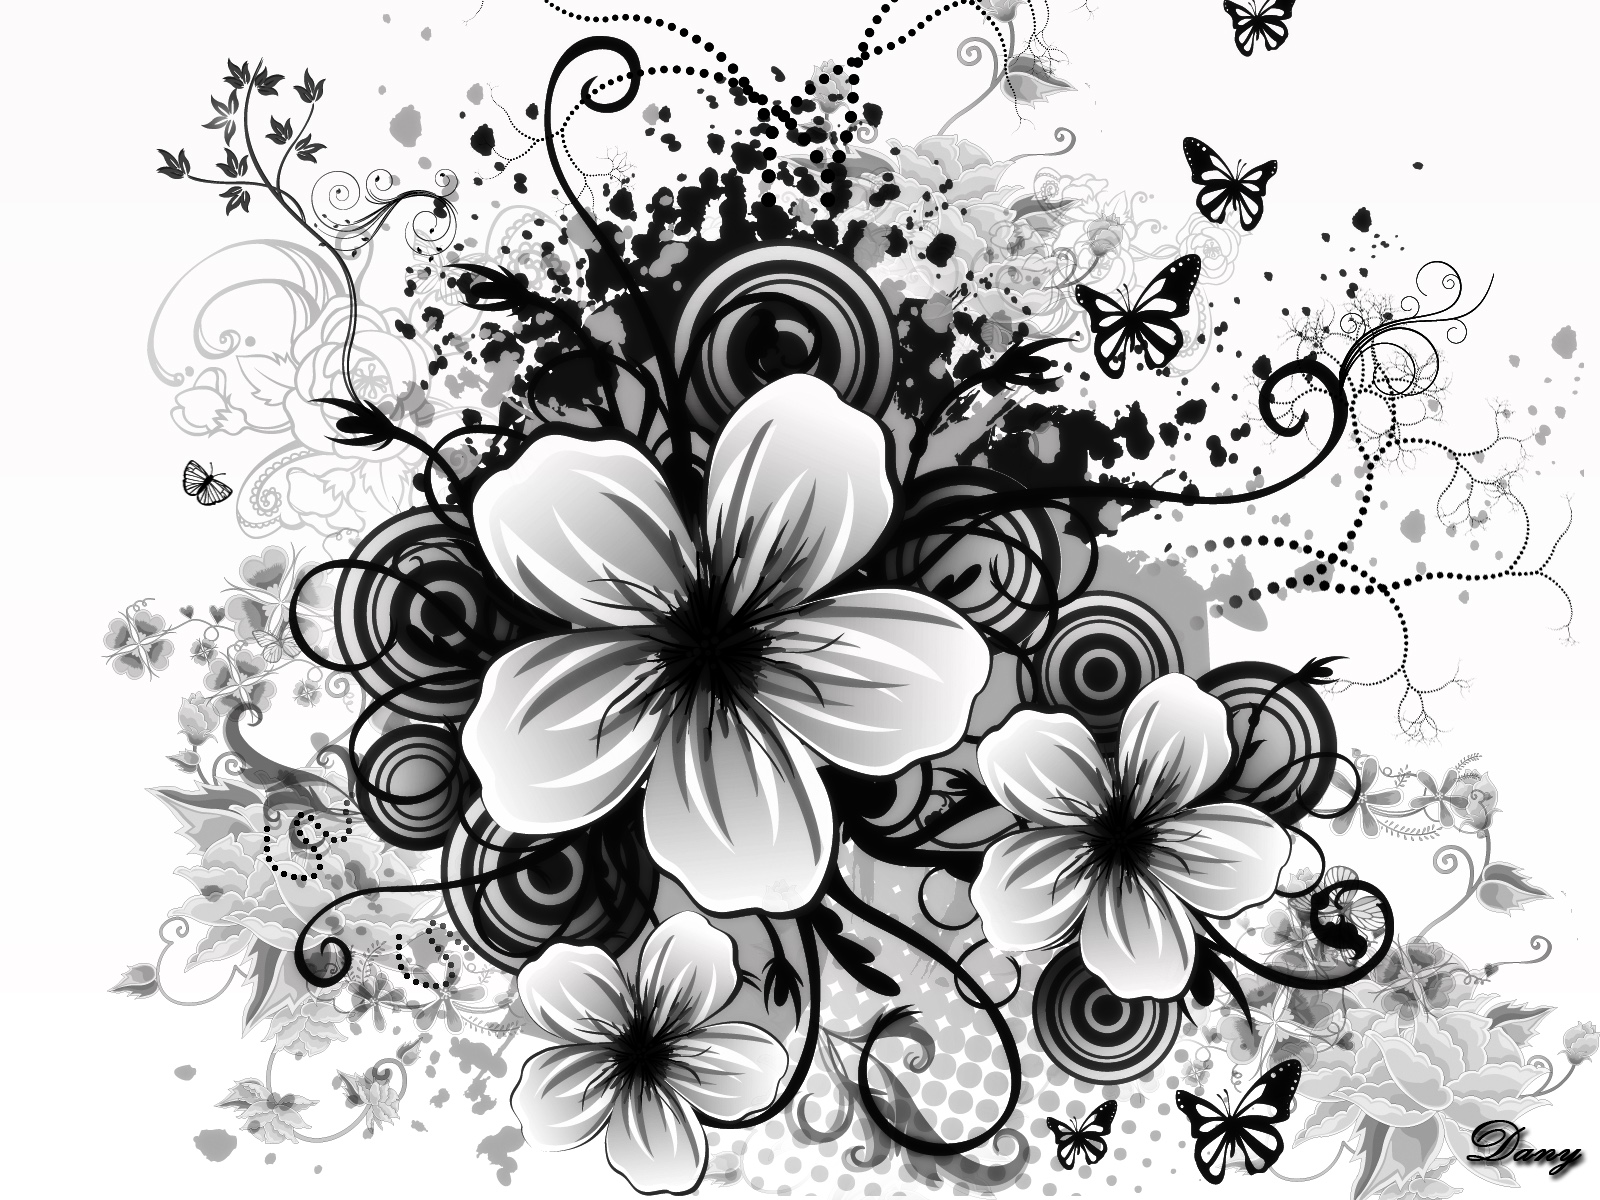 schwarzweiss blumentapete,schwarz und weiß,monochrome fotografie,blume,blütenblatt,pflanze